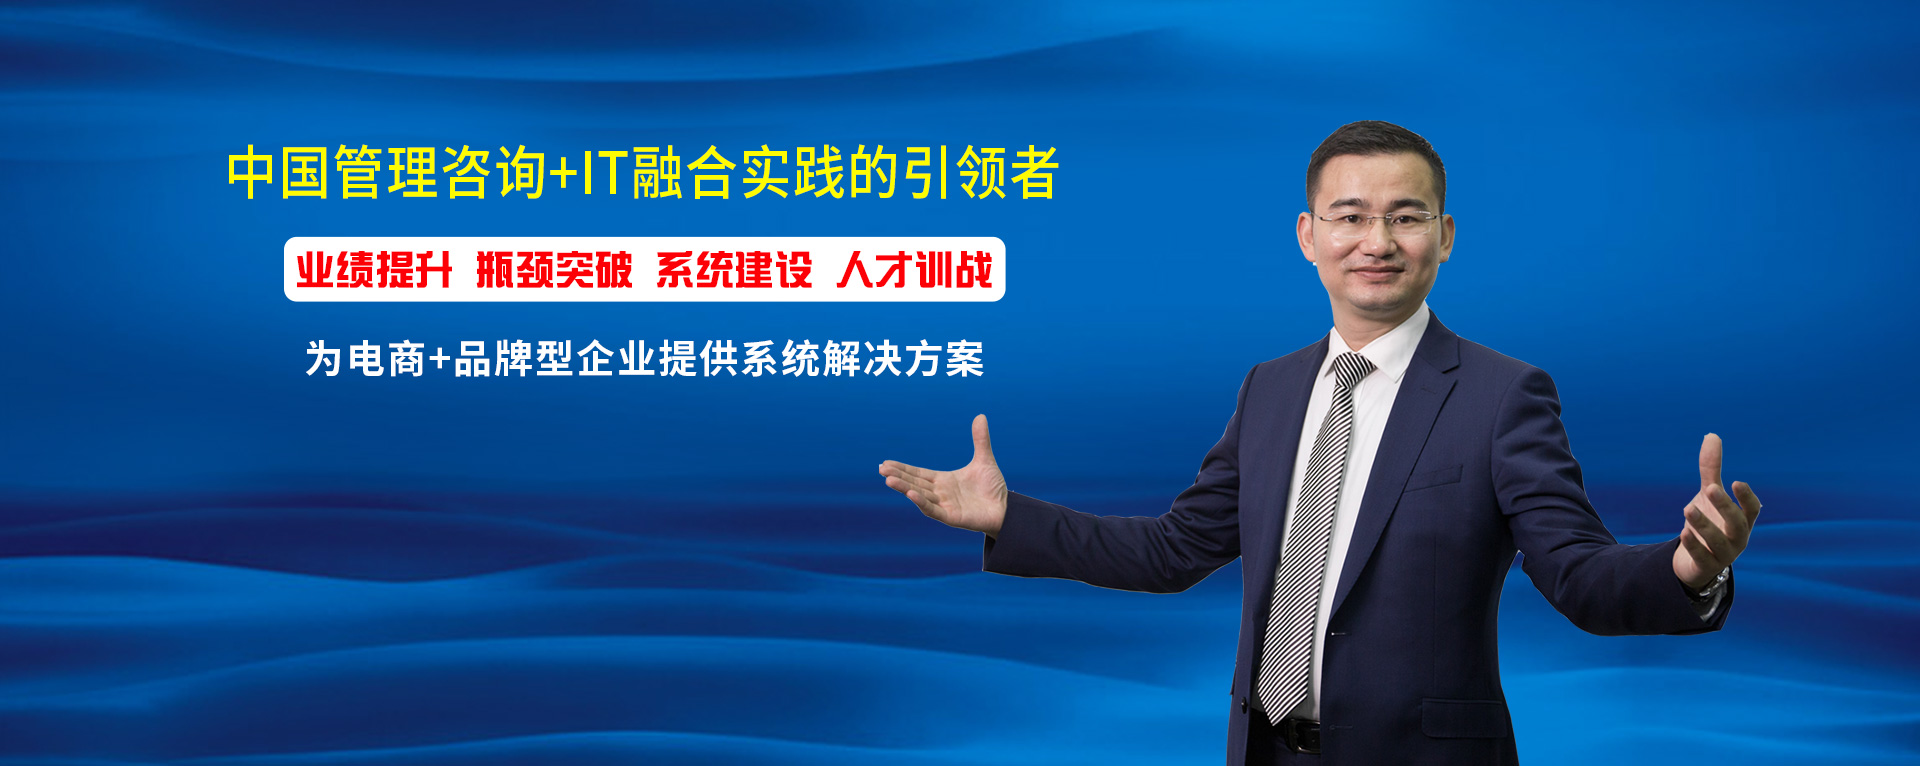 深圳市汉科电子有限公司经营规划改善案例